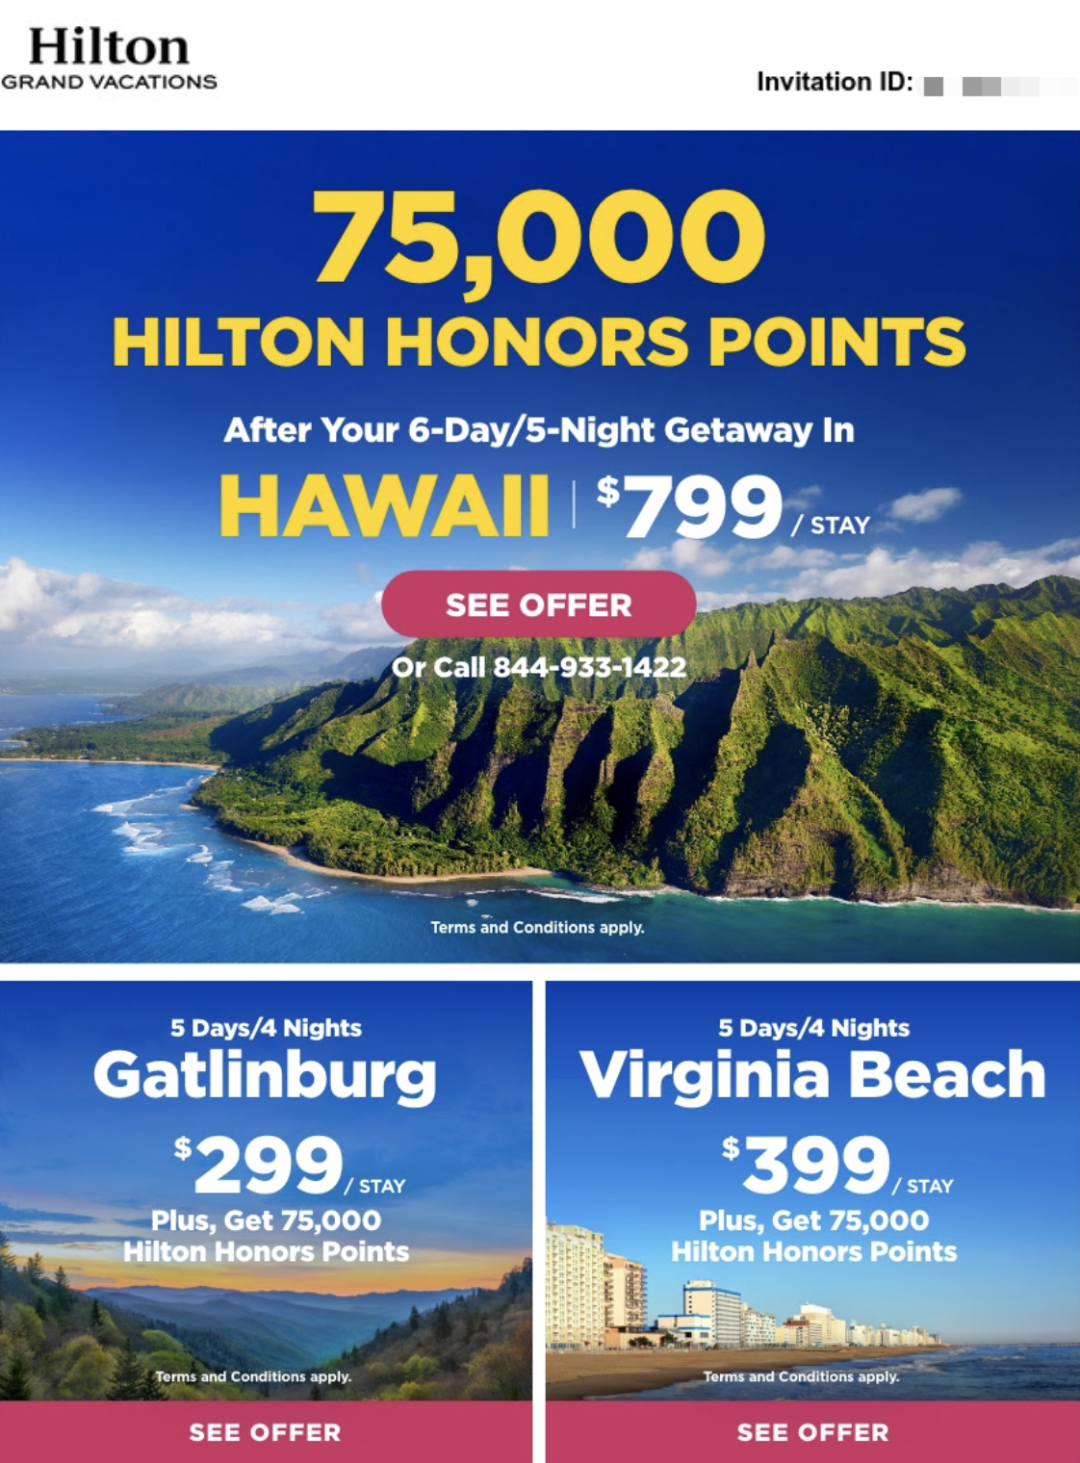 《希尔顿给力听课房再次回归，直送75K希尔顿积分，超值优惠享受高品质夏威夷度假》